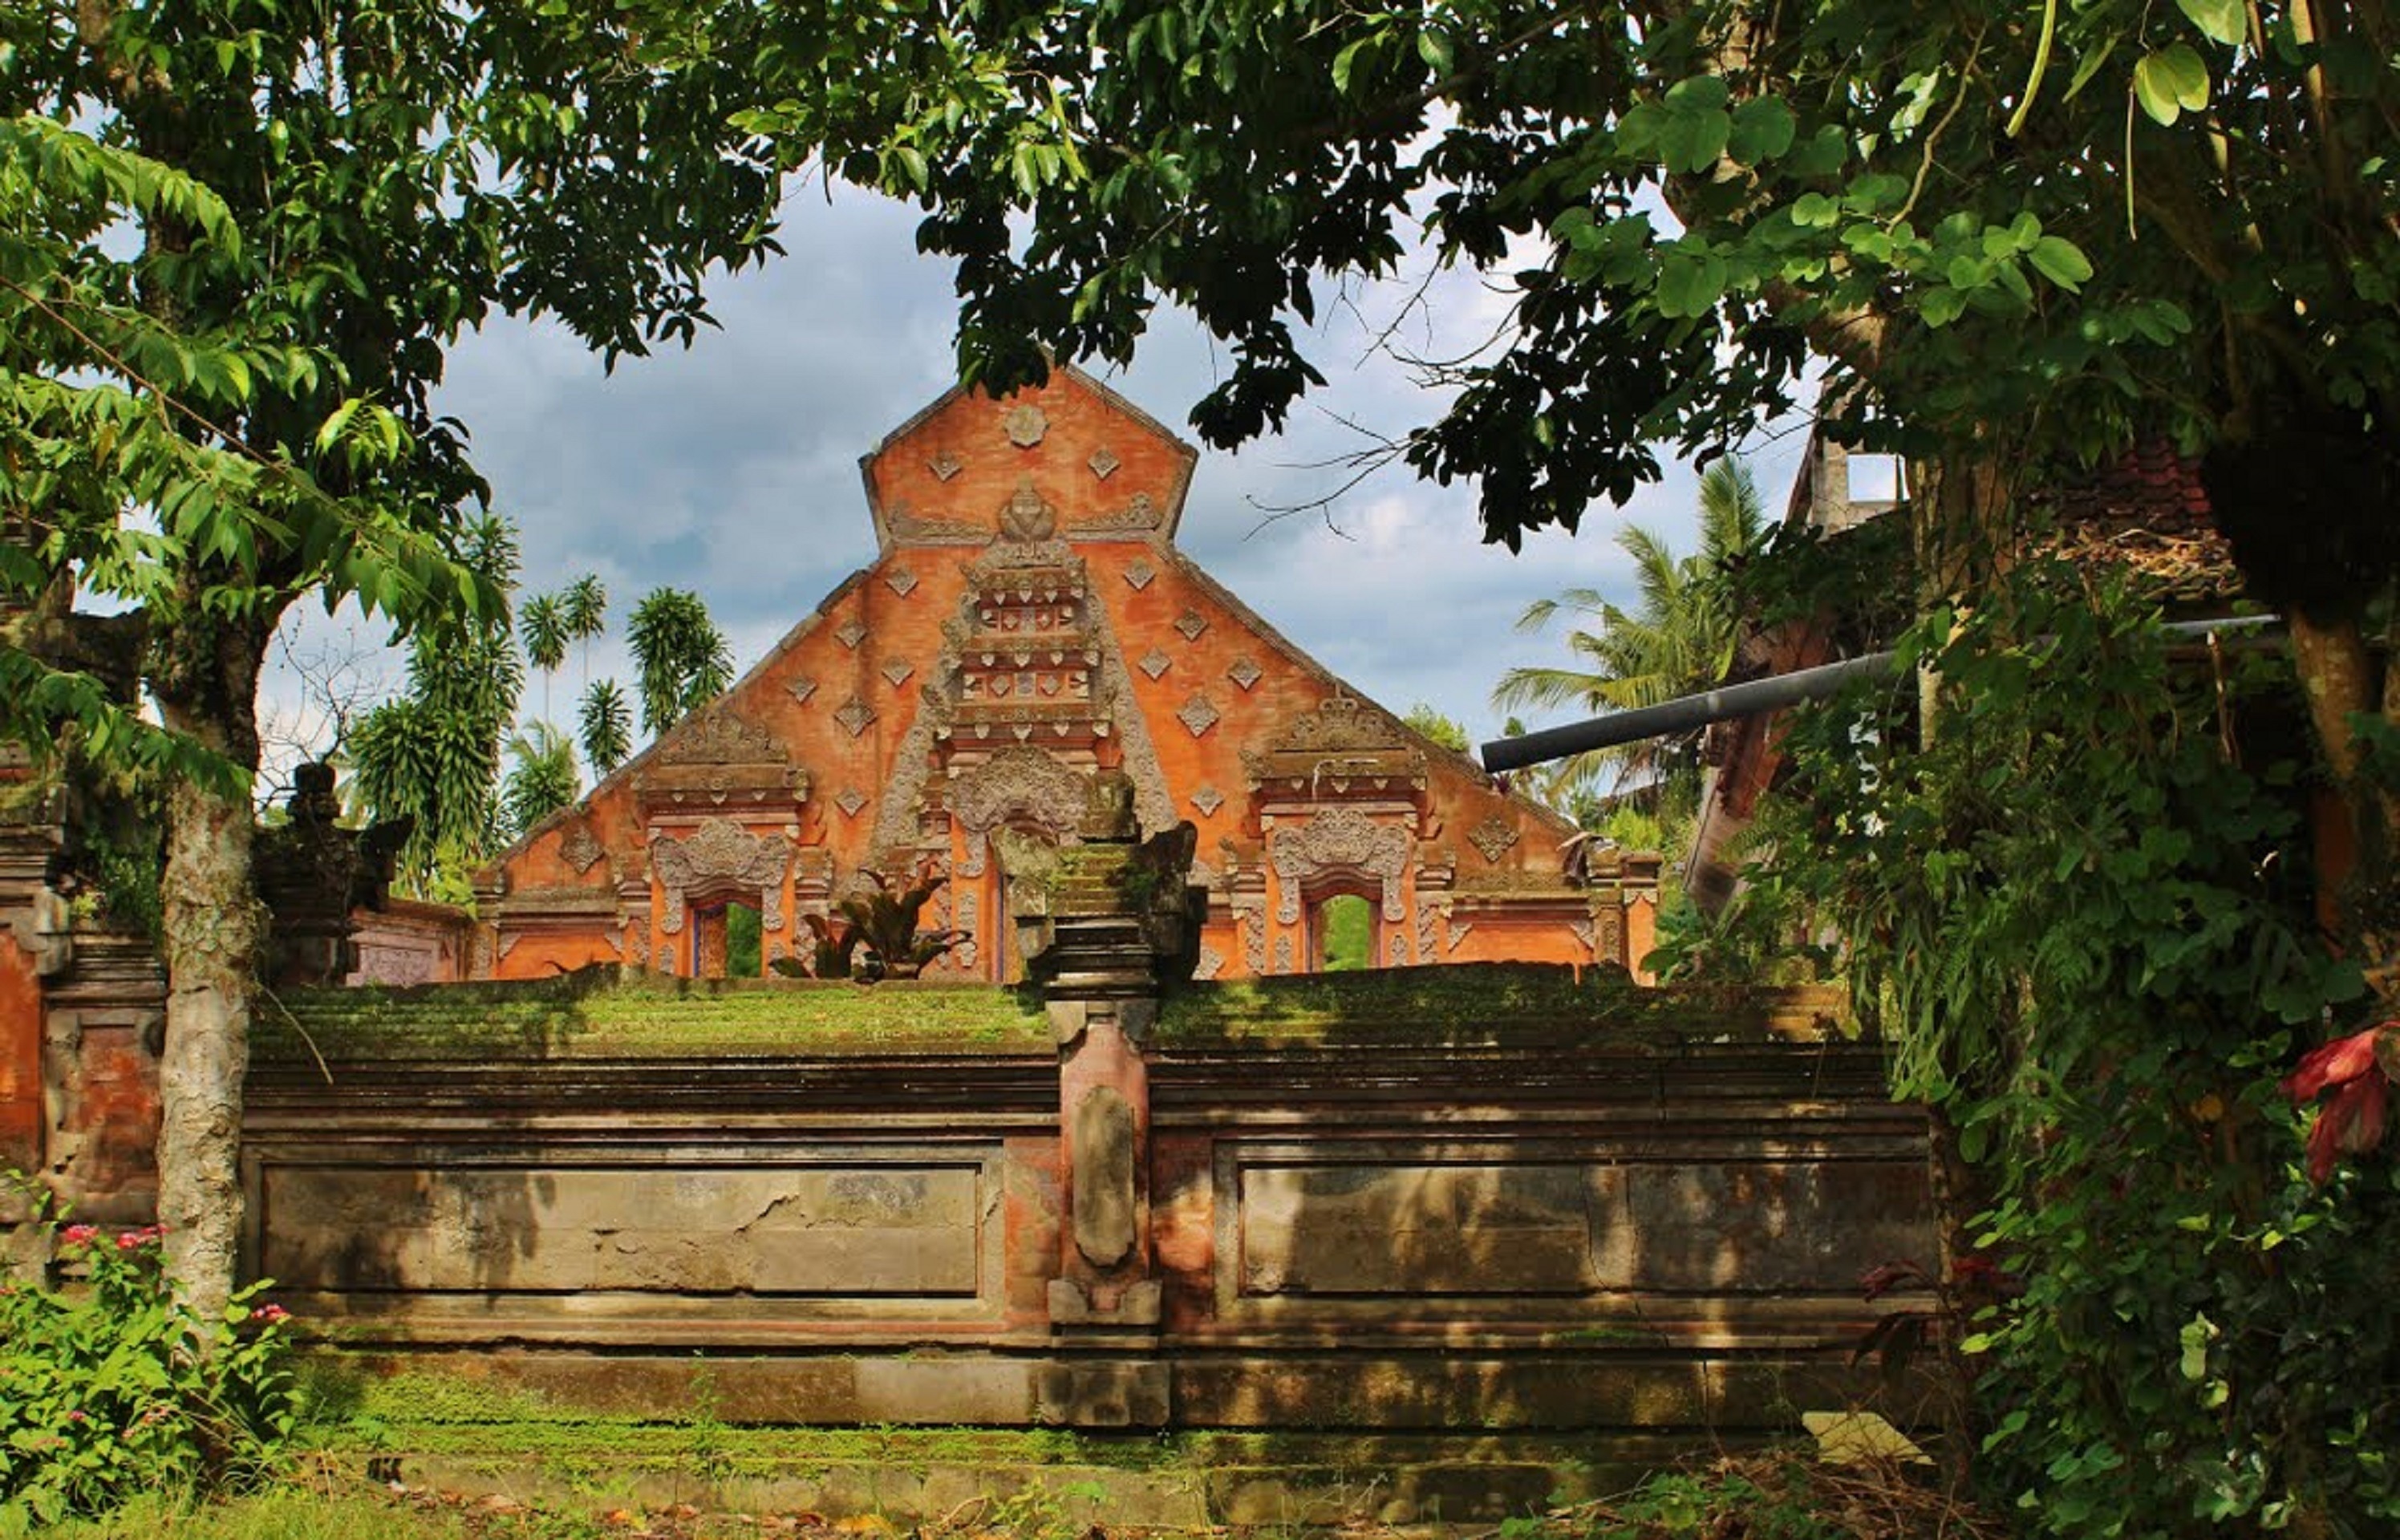 orange concrete pyramid temple in thailand